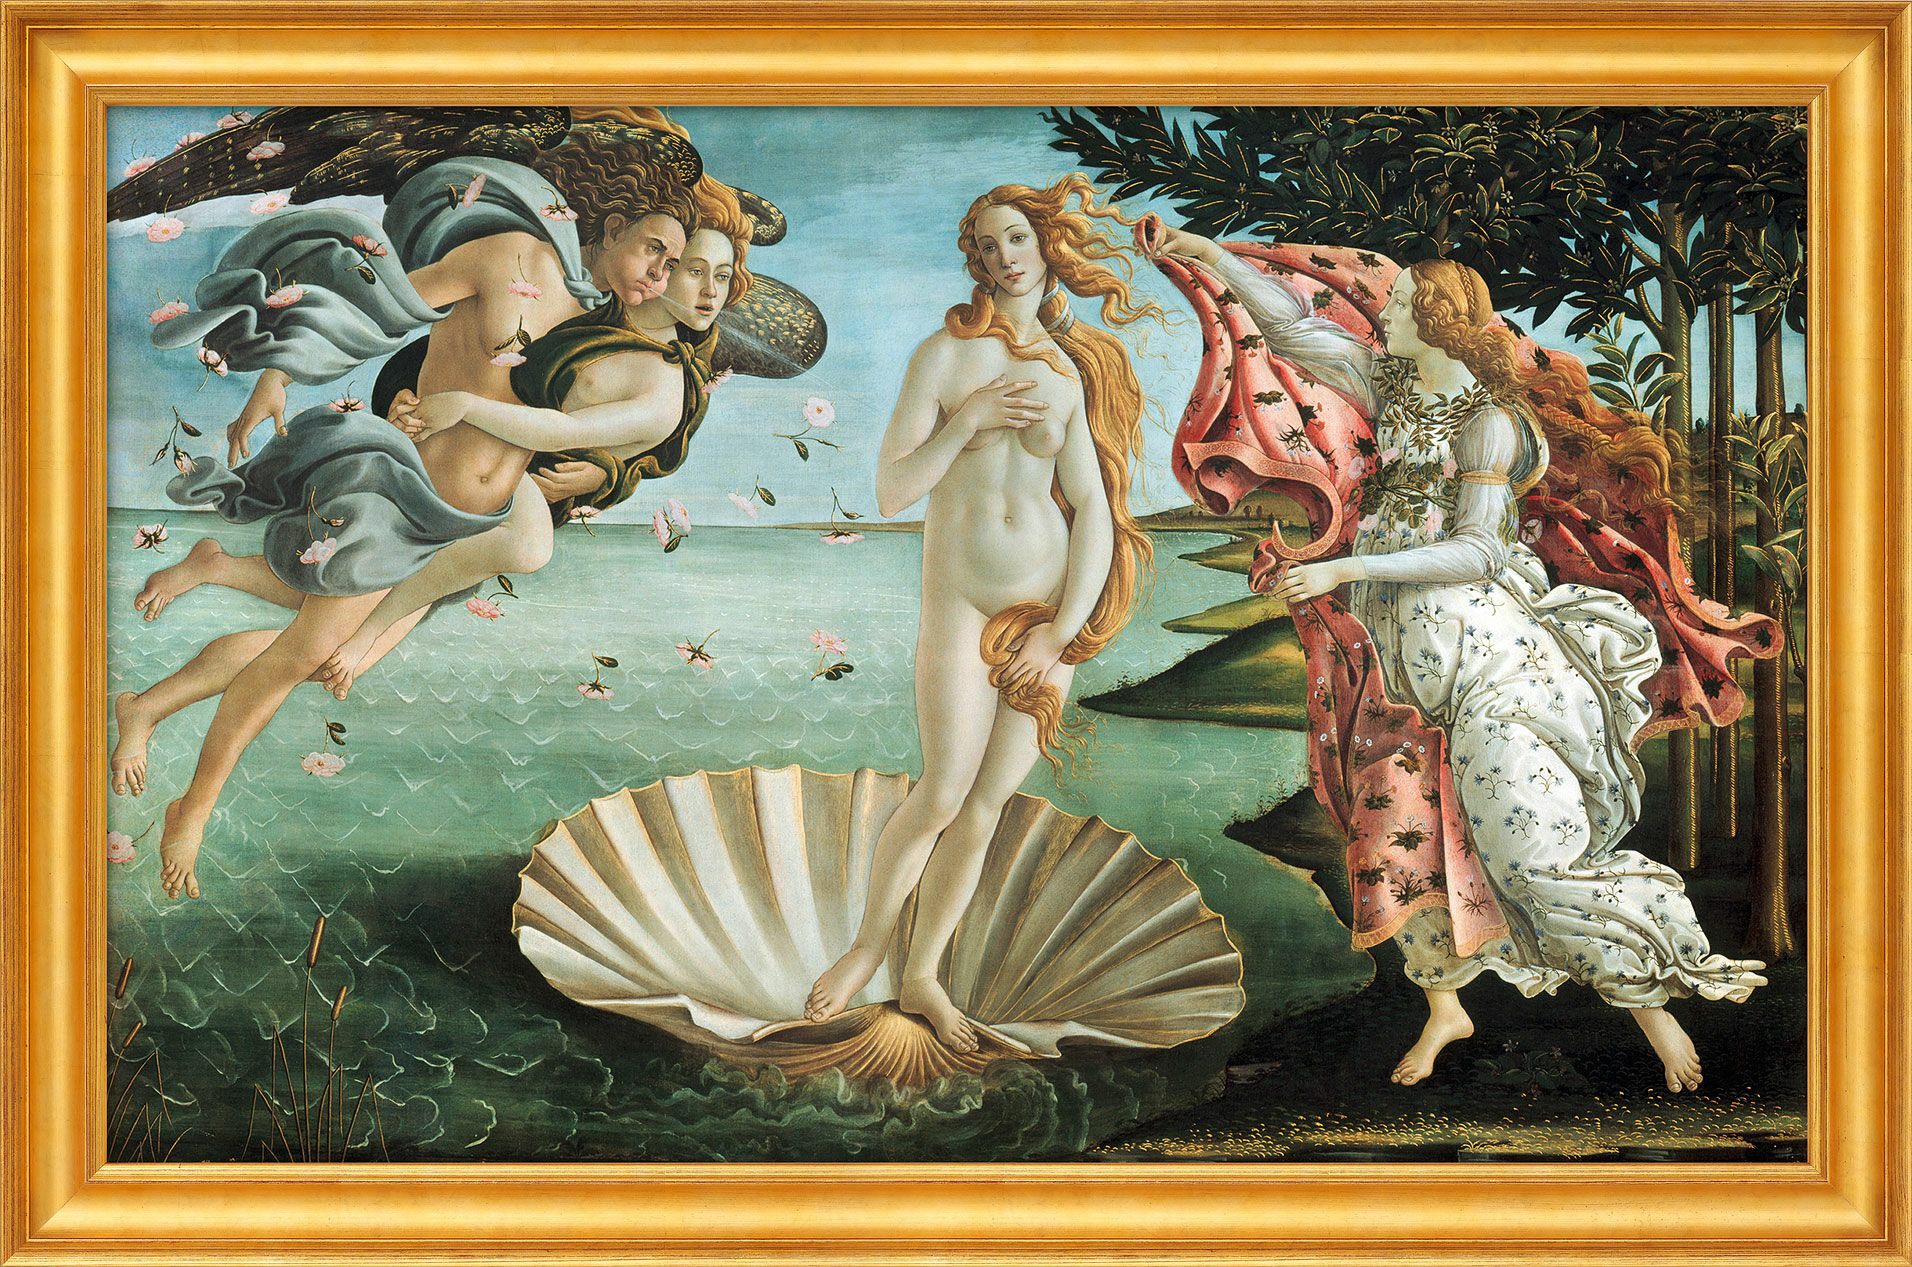 Billede "Venus' fødsel" (1484/86), indrammet von Sandro Botticelli